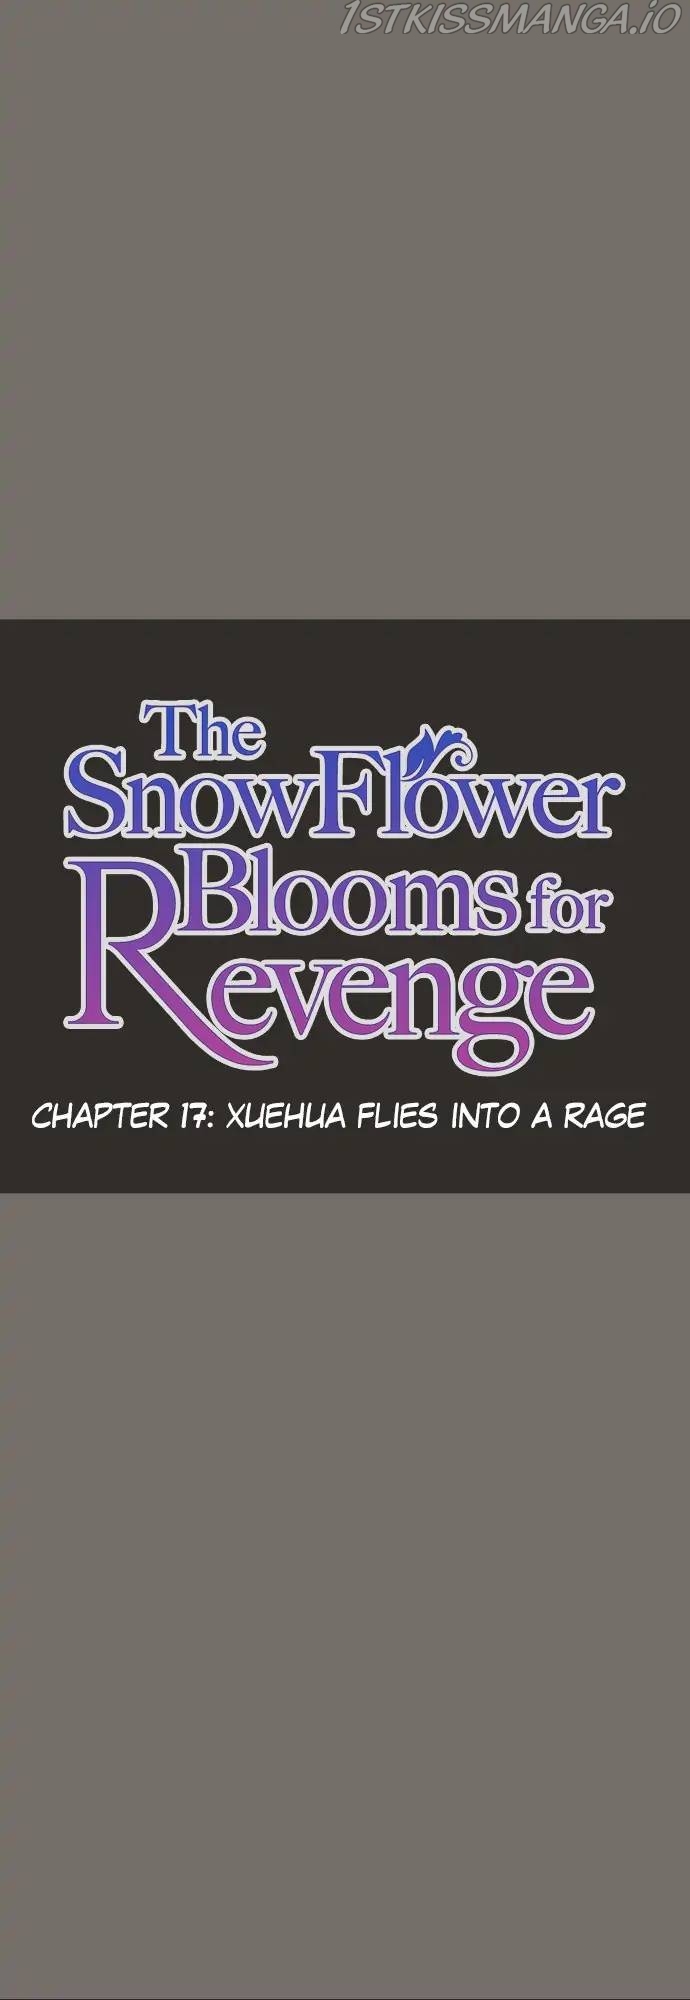 The Snowflower Blooms for Revenge chapter 17